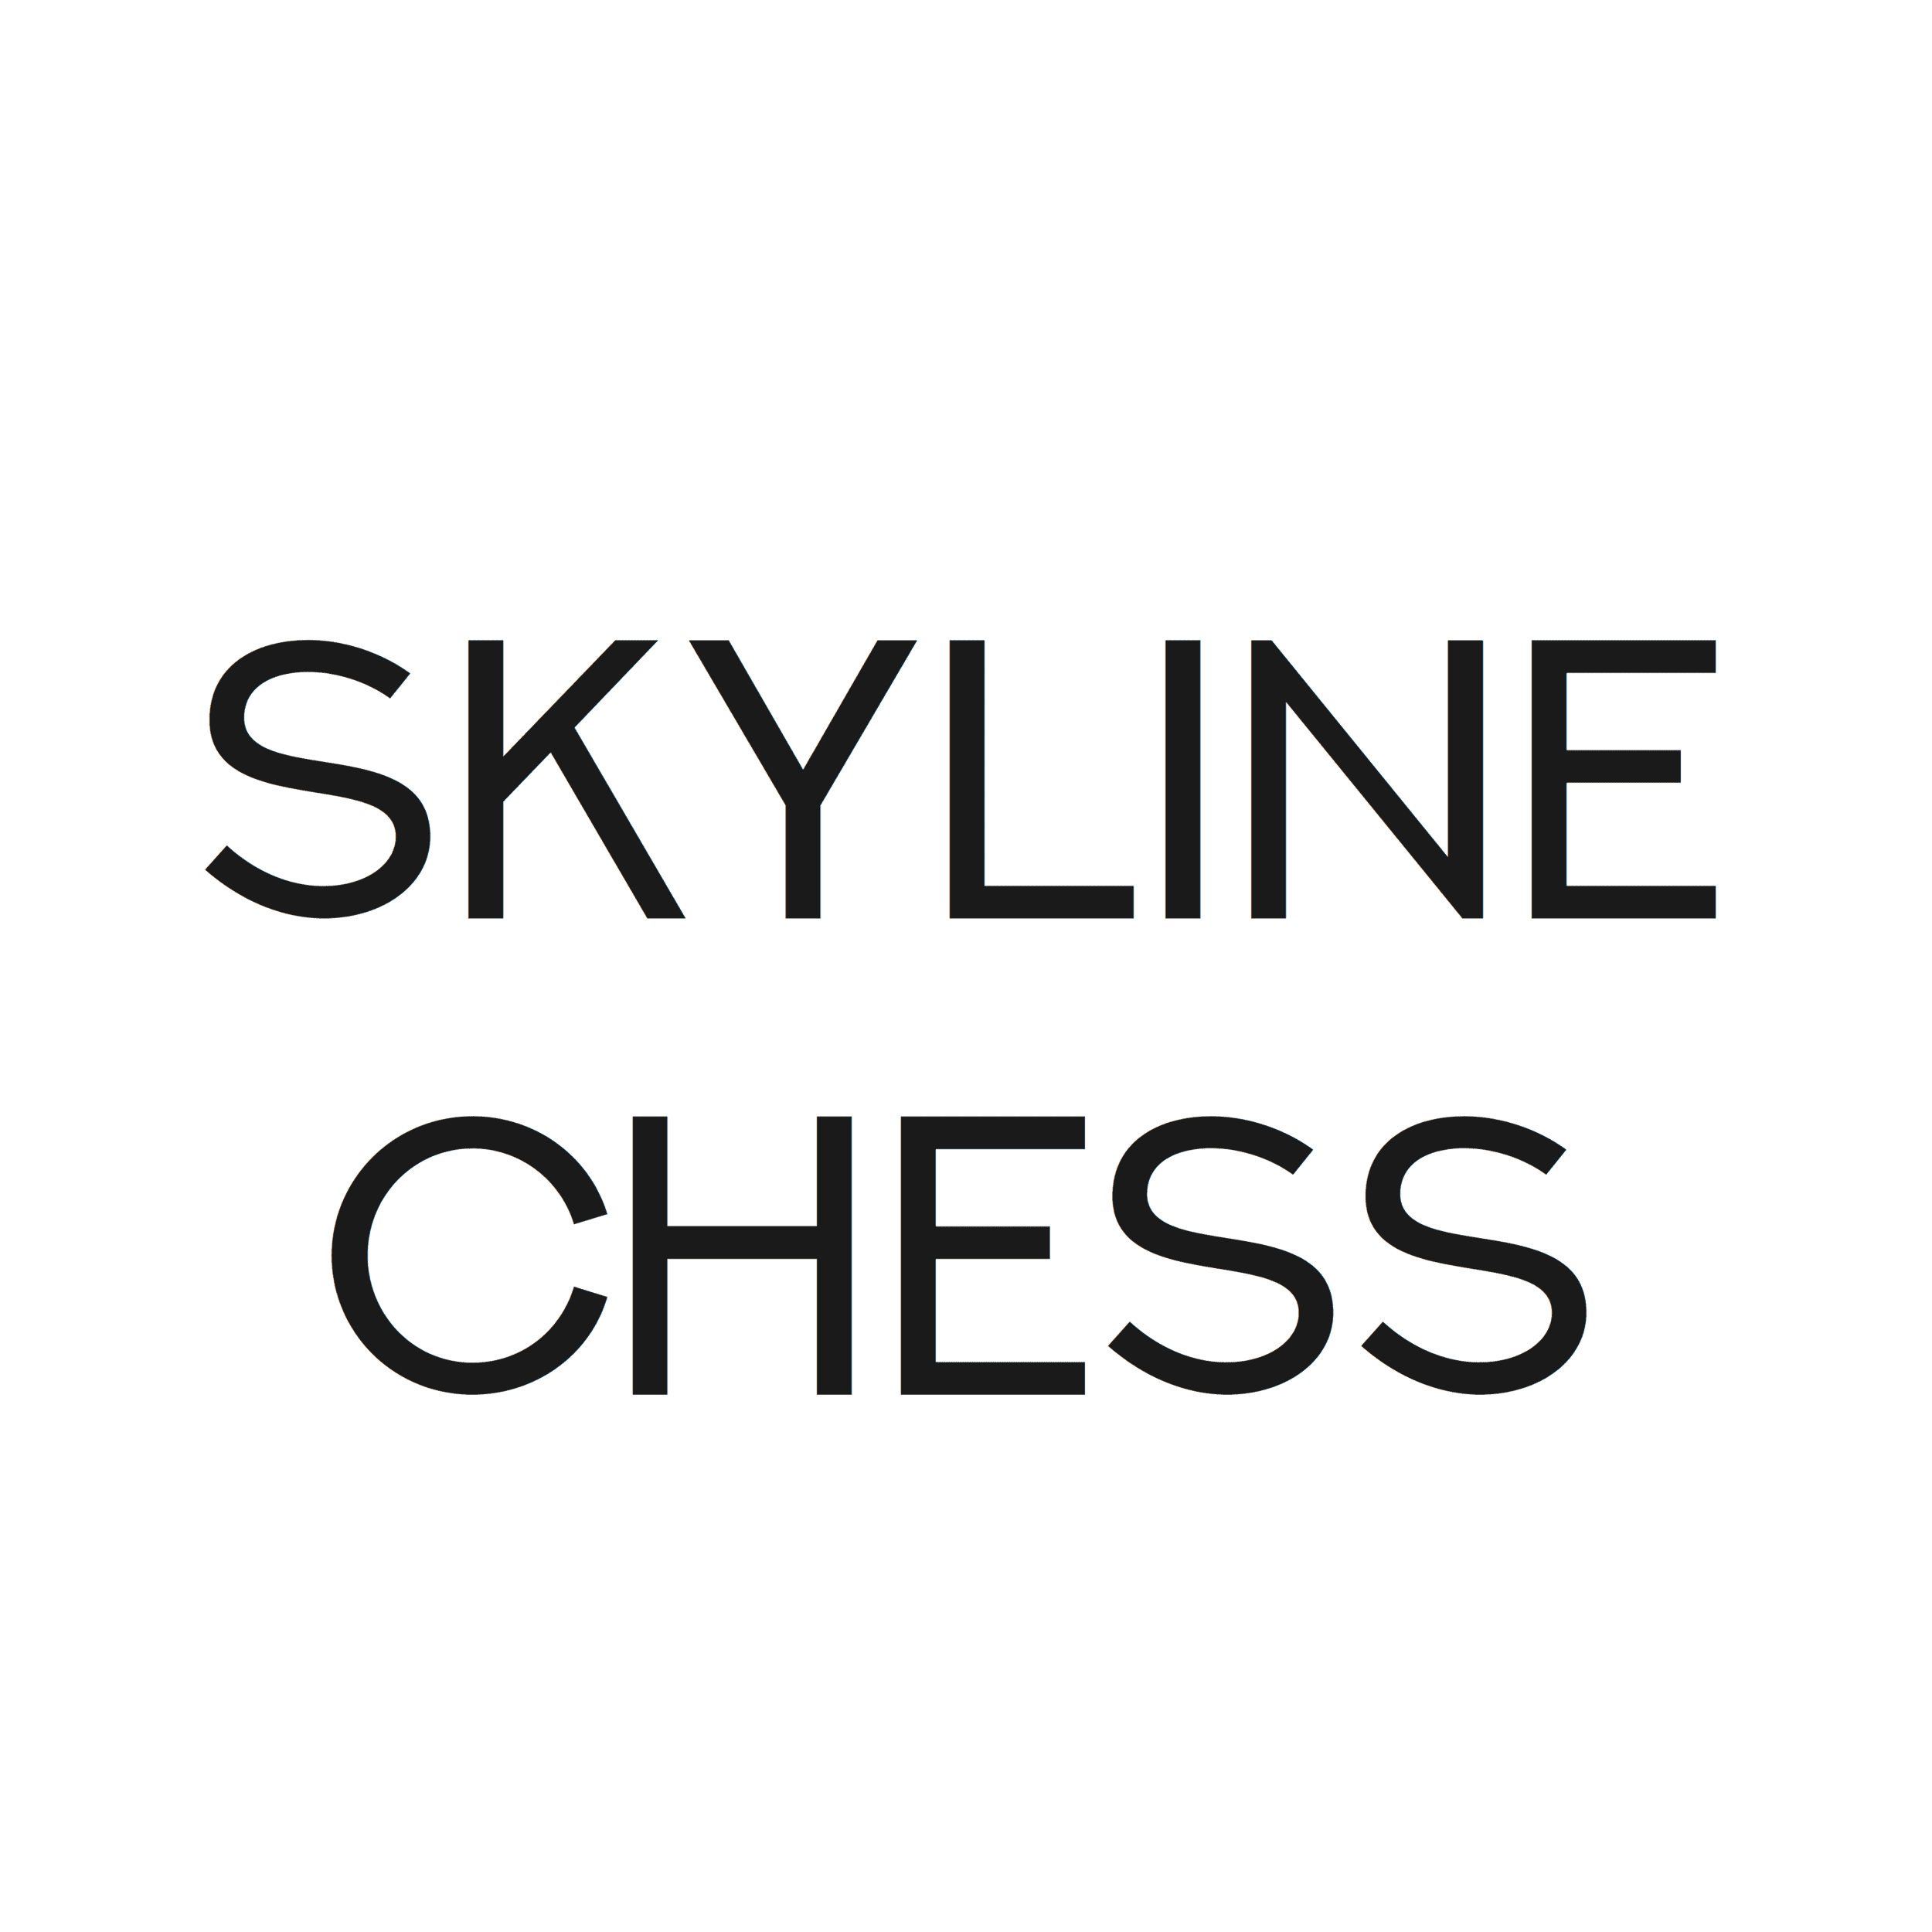 Skyline Chess, magasin de jeu et de déco à Caen